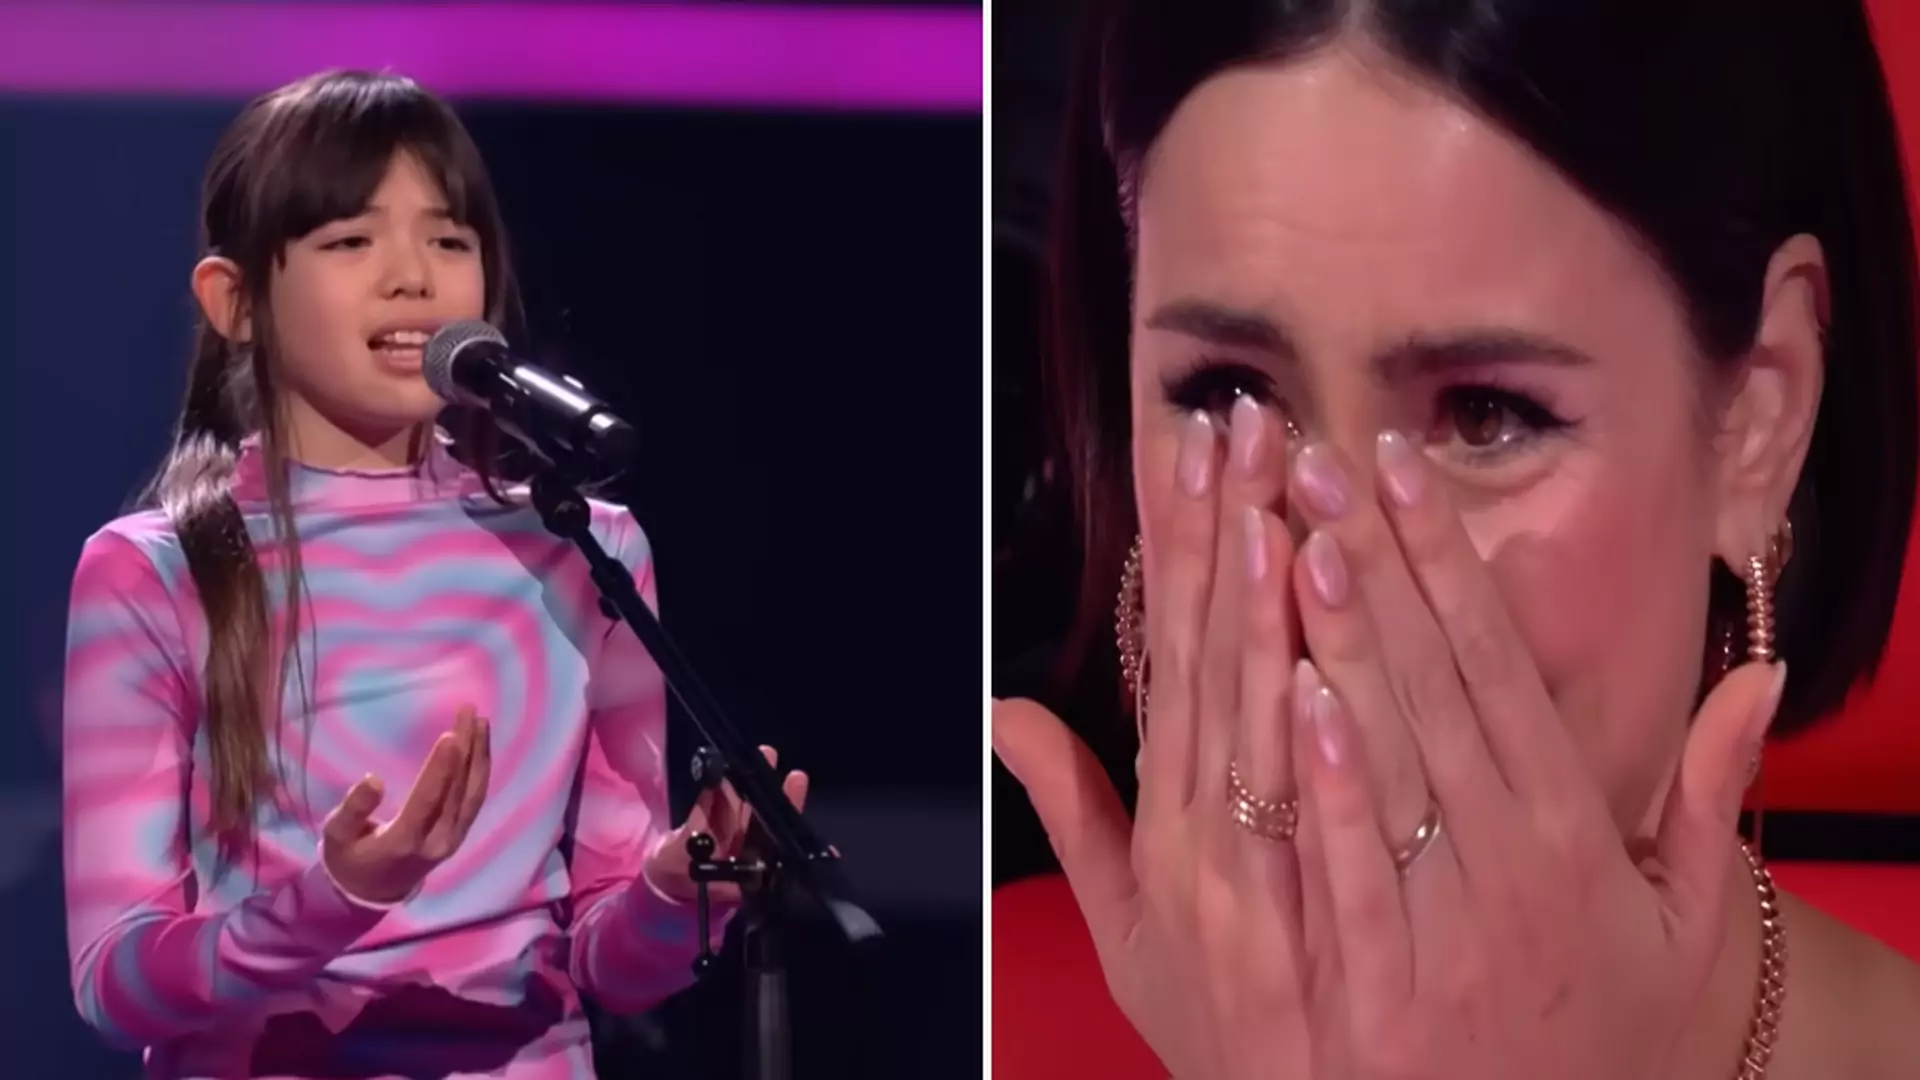 Emocjonalny występ 11-latki w "The Voice Kids". Dla chorej siostry nauczyła się języka migowego